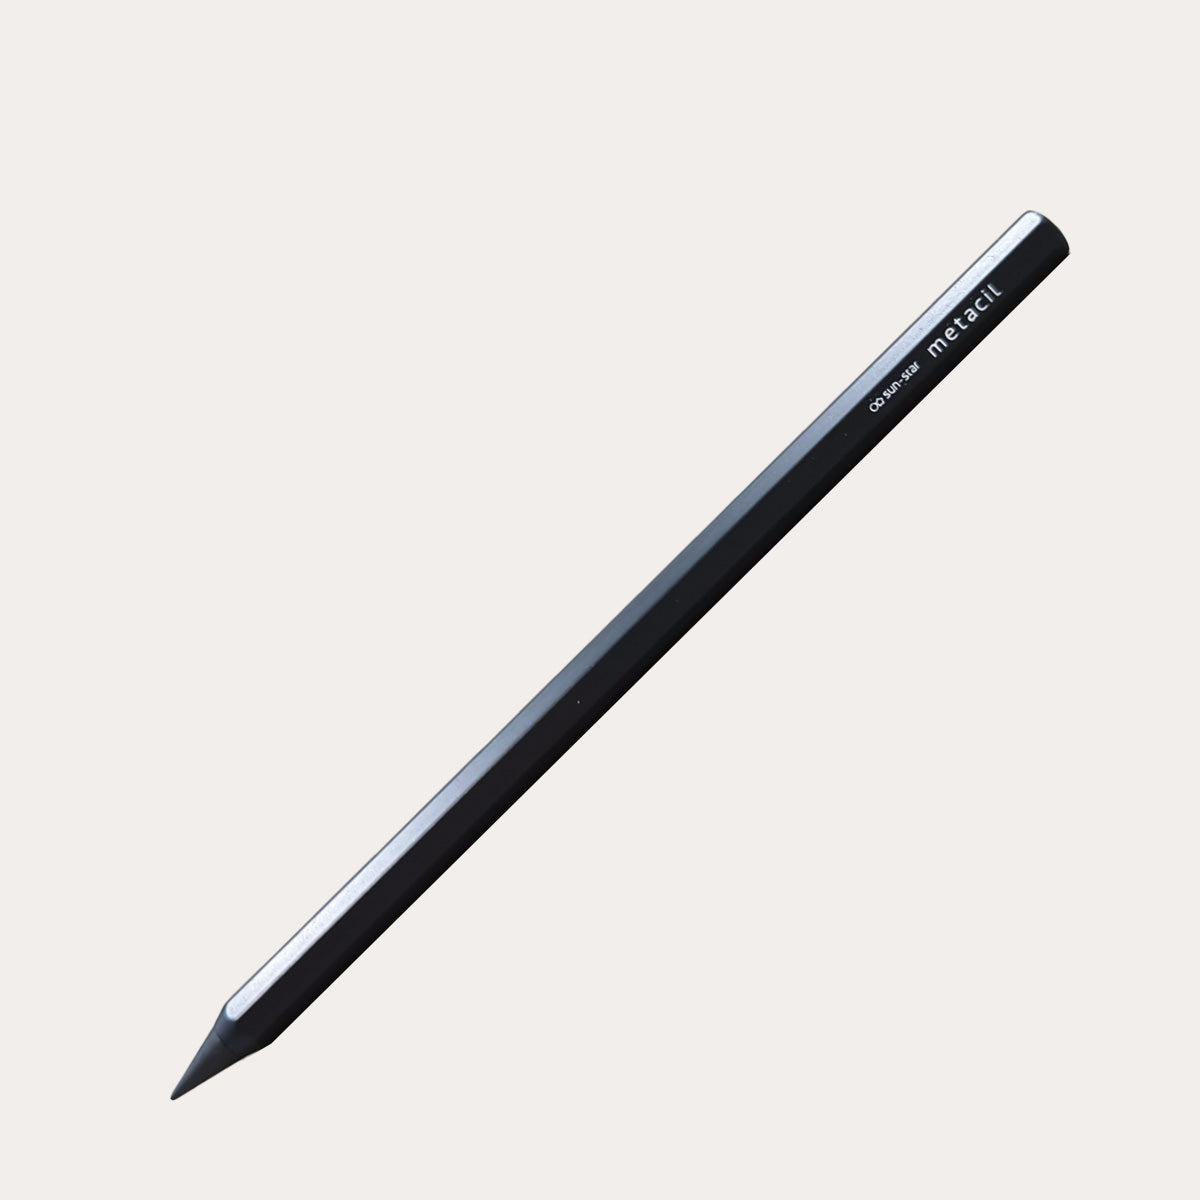 Metacil Pencil – TACTO STUDIO